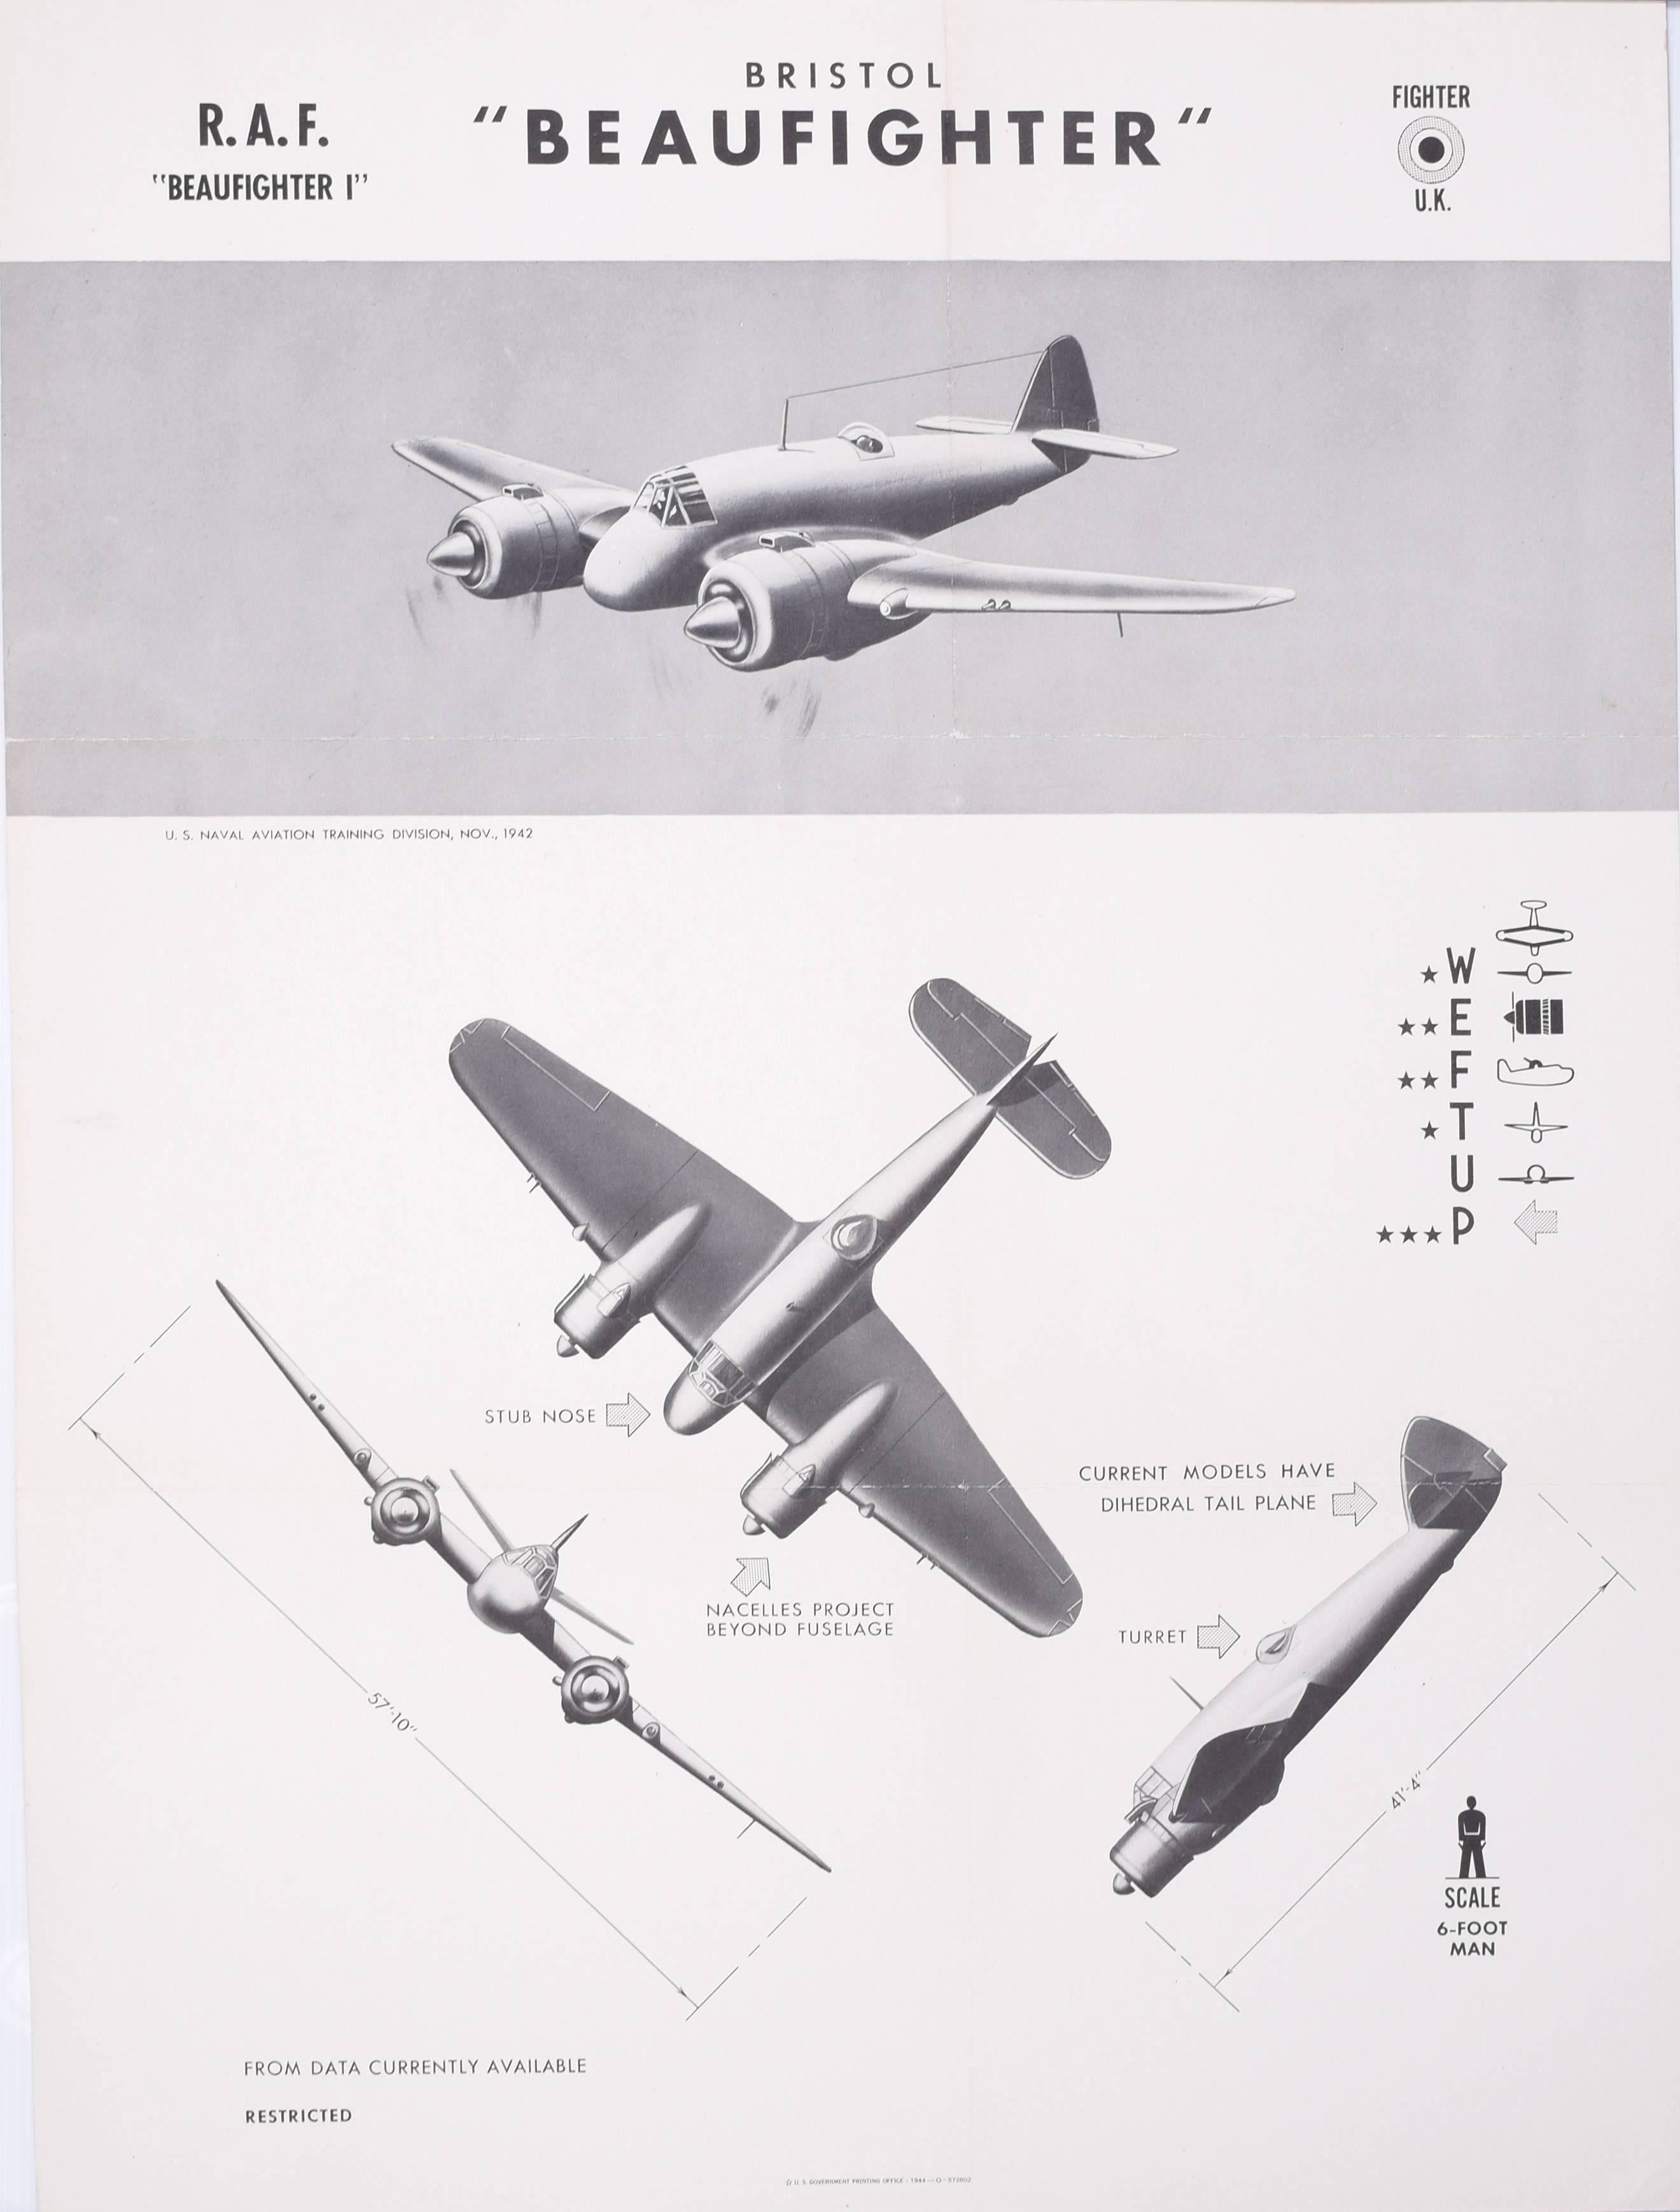 Print Unknown - Affiche de reconnaissance d'avion Beaufighter de la Royal Air Force Bristol datant de 1942 et datant de la Première Guerre mondiale 